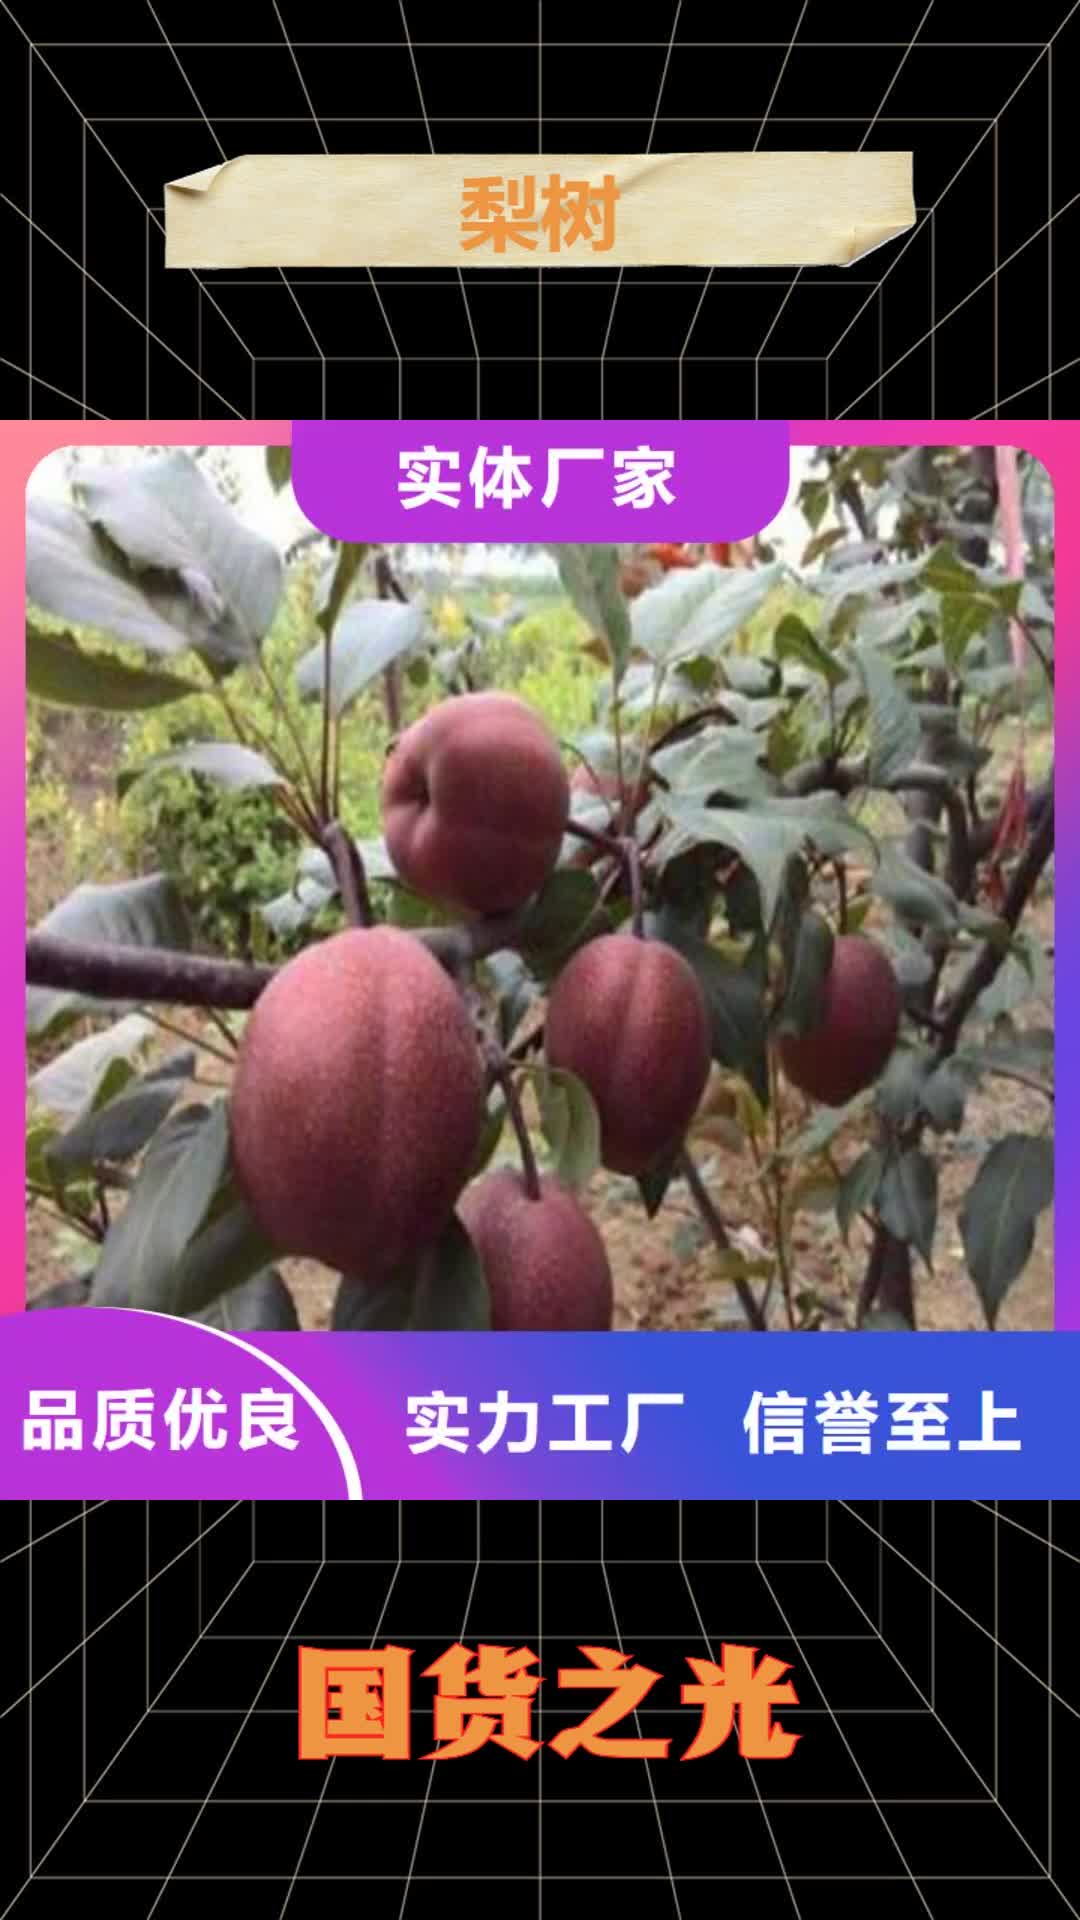 阿拉善【梨树】,樱桃苗支持定制加工